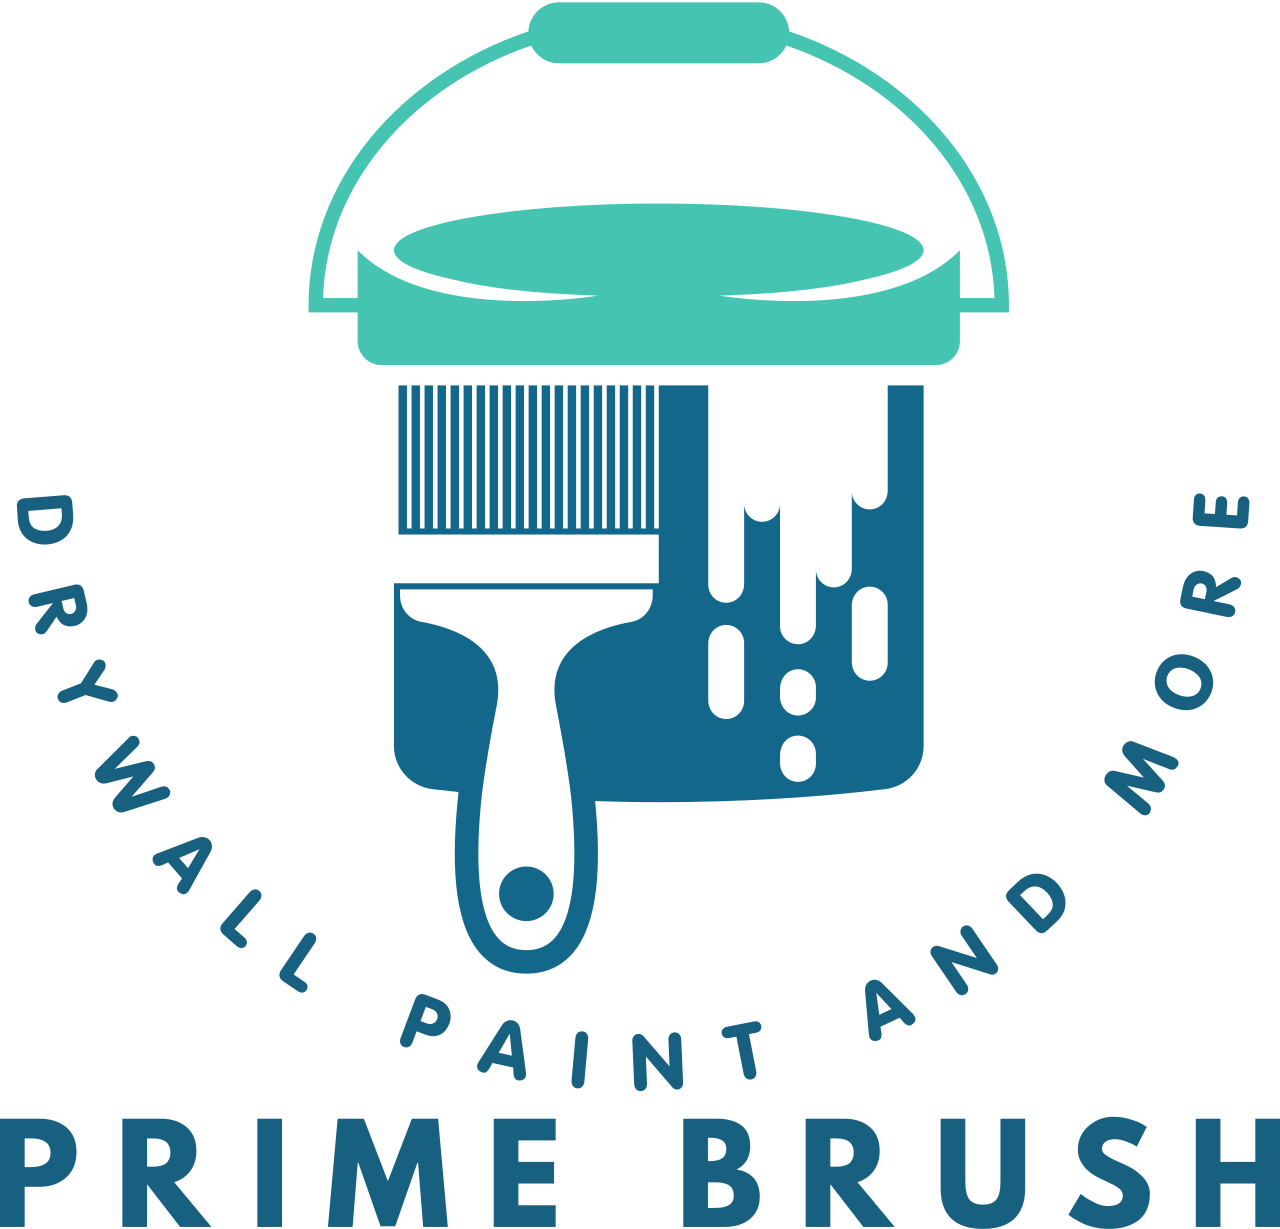 Prime Brush's logo